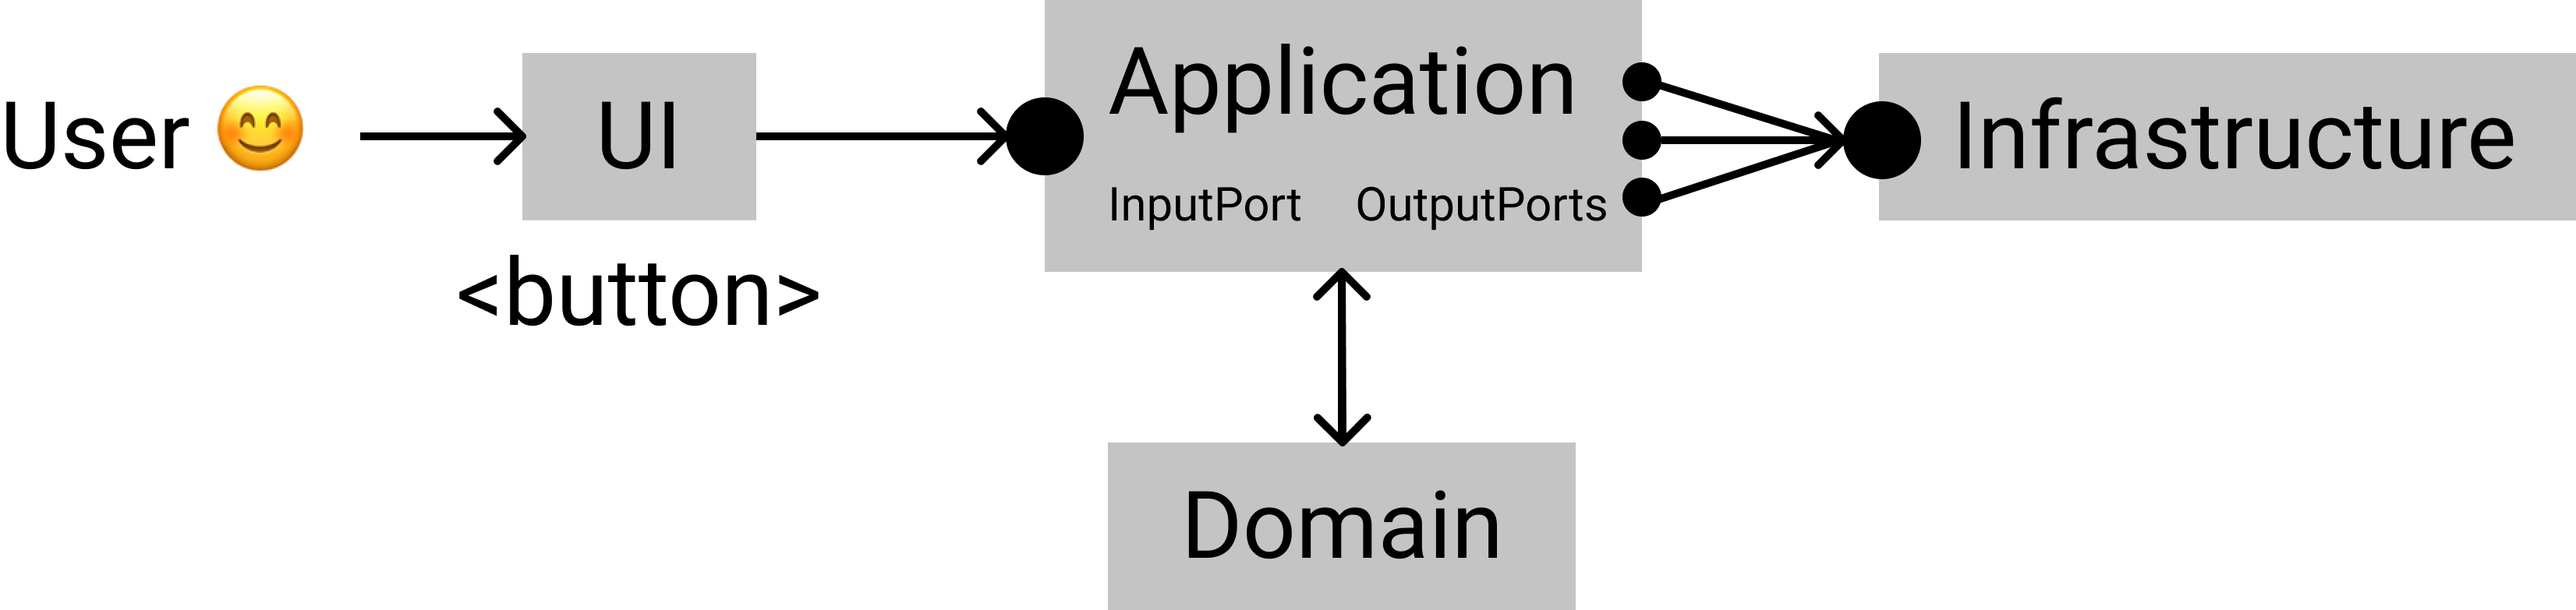 Пользователь общается с приложением через порты-спецификации, само приложение общается с внешними сервисами тоже через порты; сценарий описан отдельно, обособлено, все бизнес-правила собраны в домене